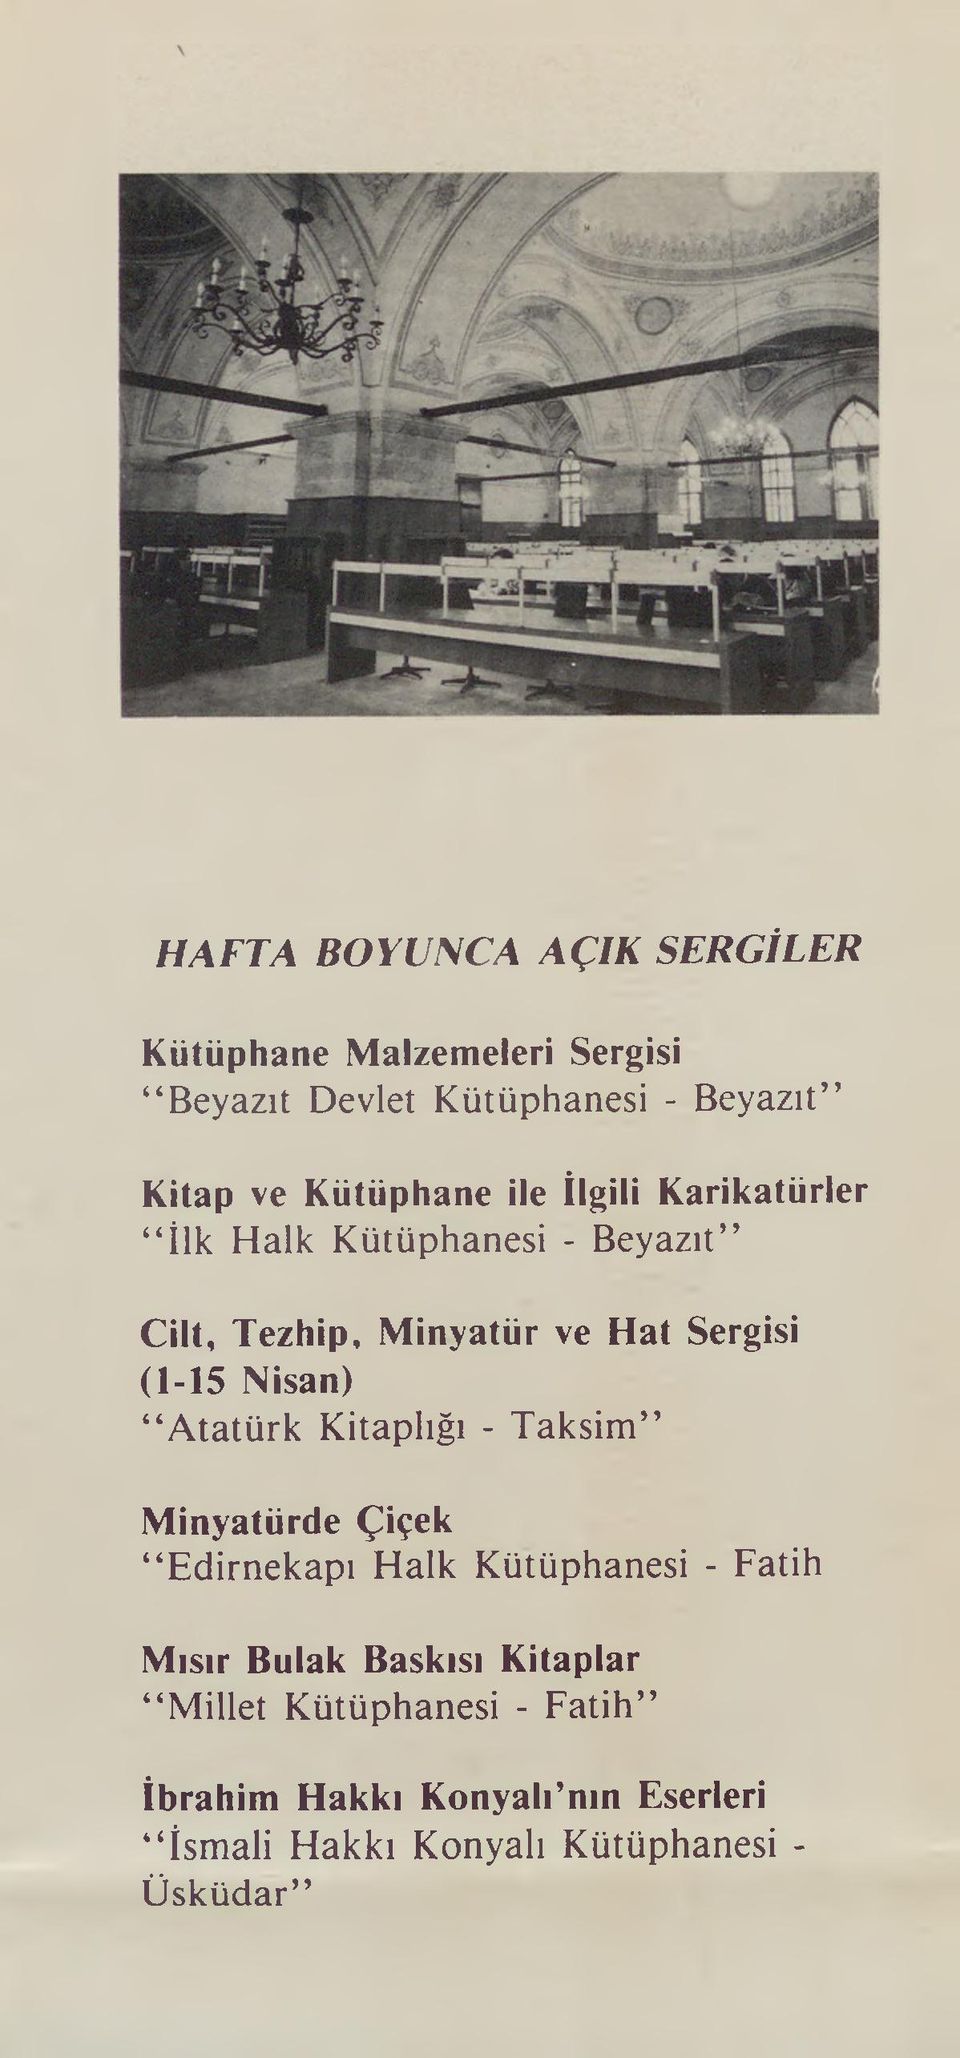 Nisan) Atatürk Kitaplığı - Taksim Minyatürde Çiçek Edirnekapı Halk Kütüphanesi - Fatih Mısır Bulak Baskısı